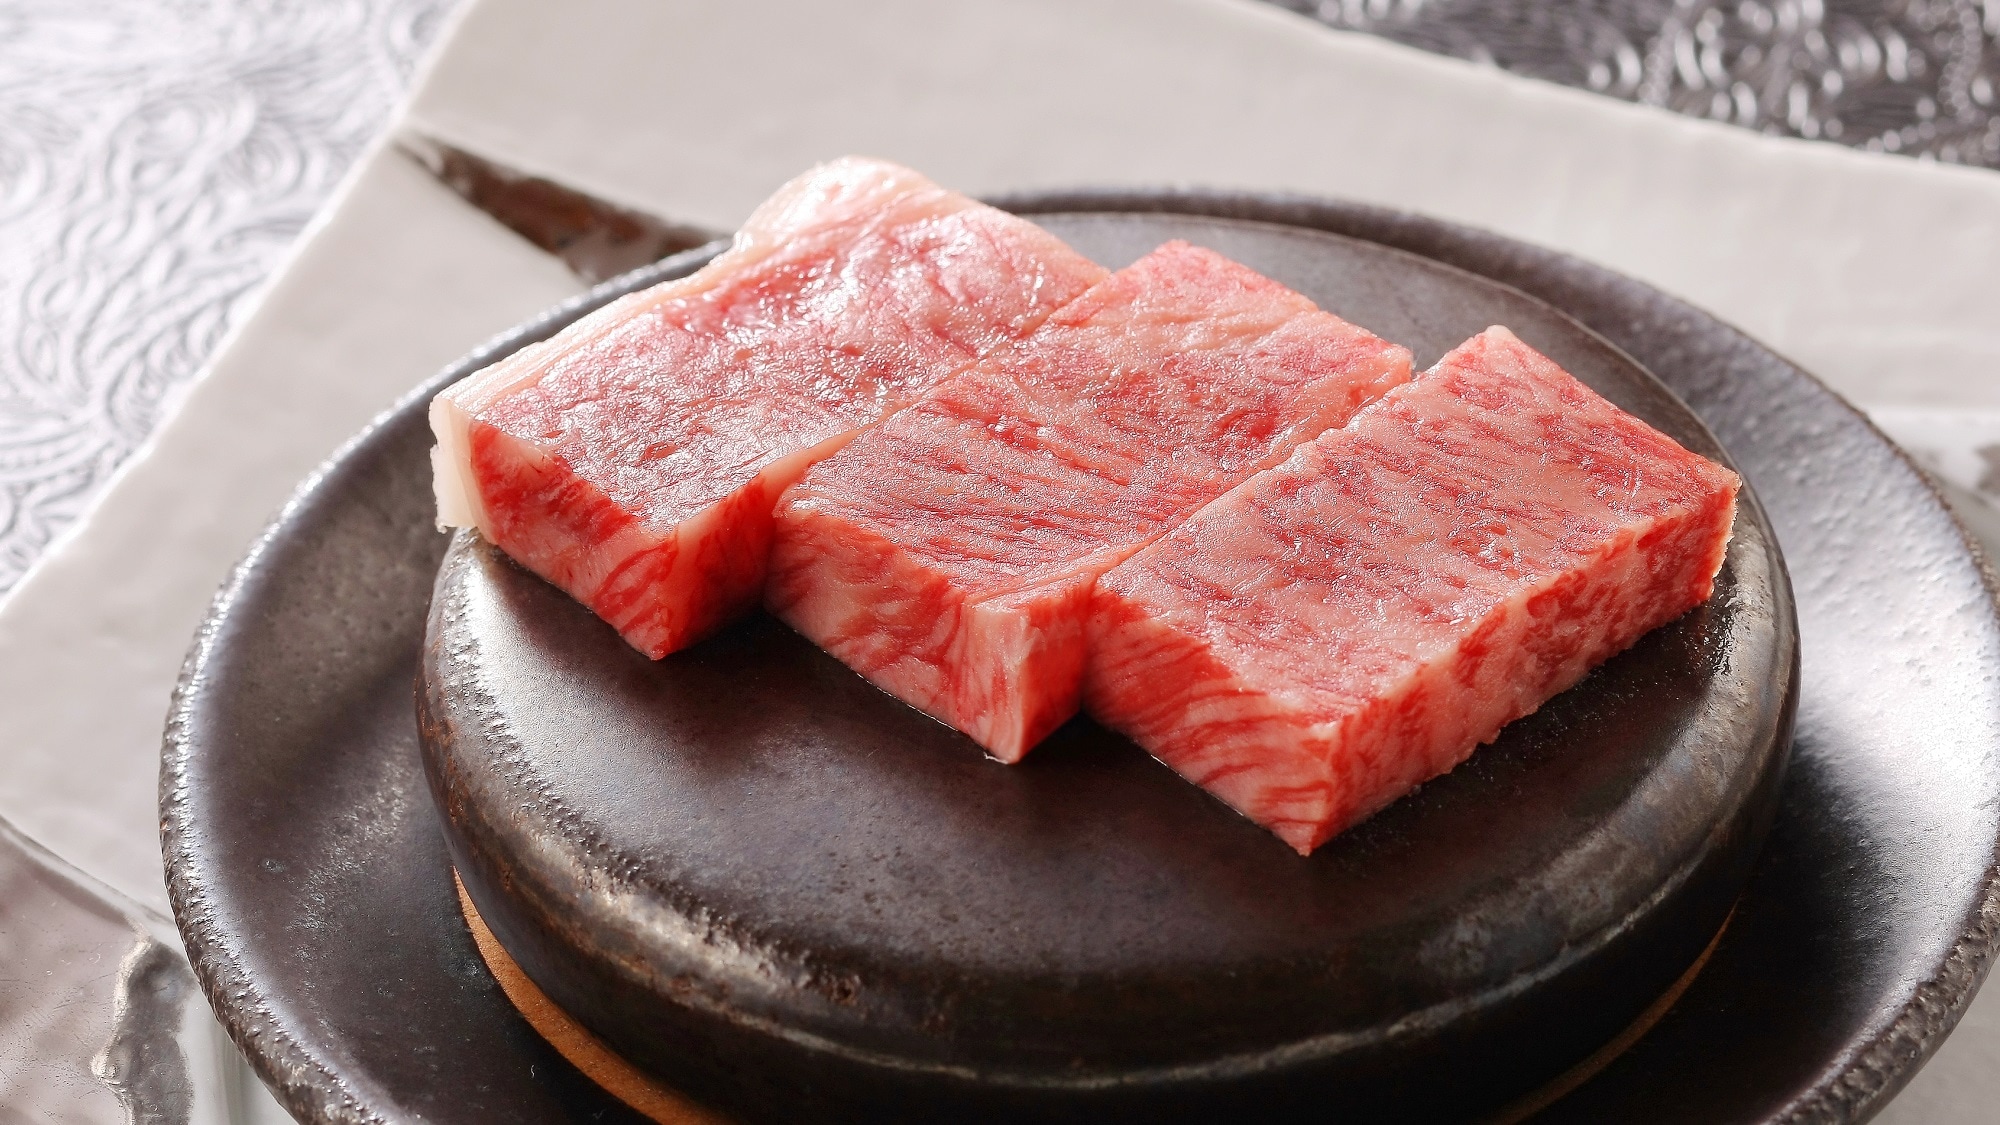 Main example of dinner: Maesawa beef steak